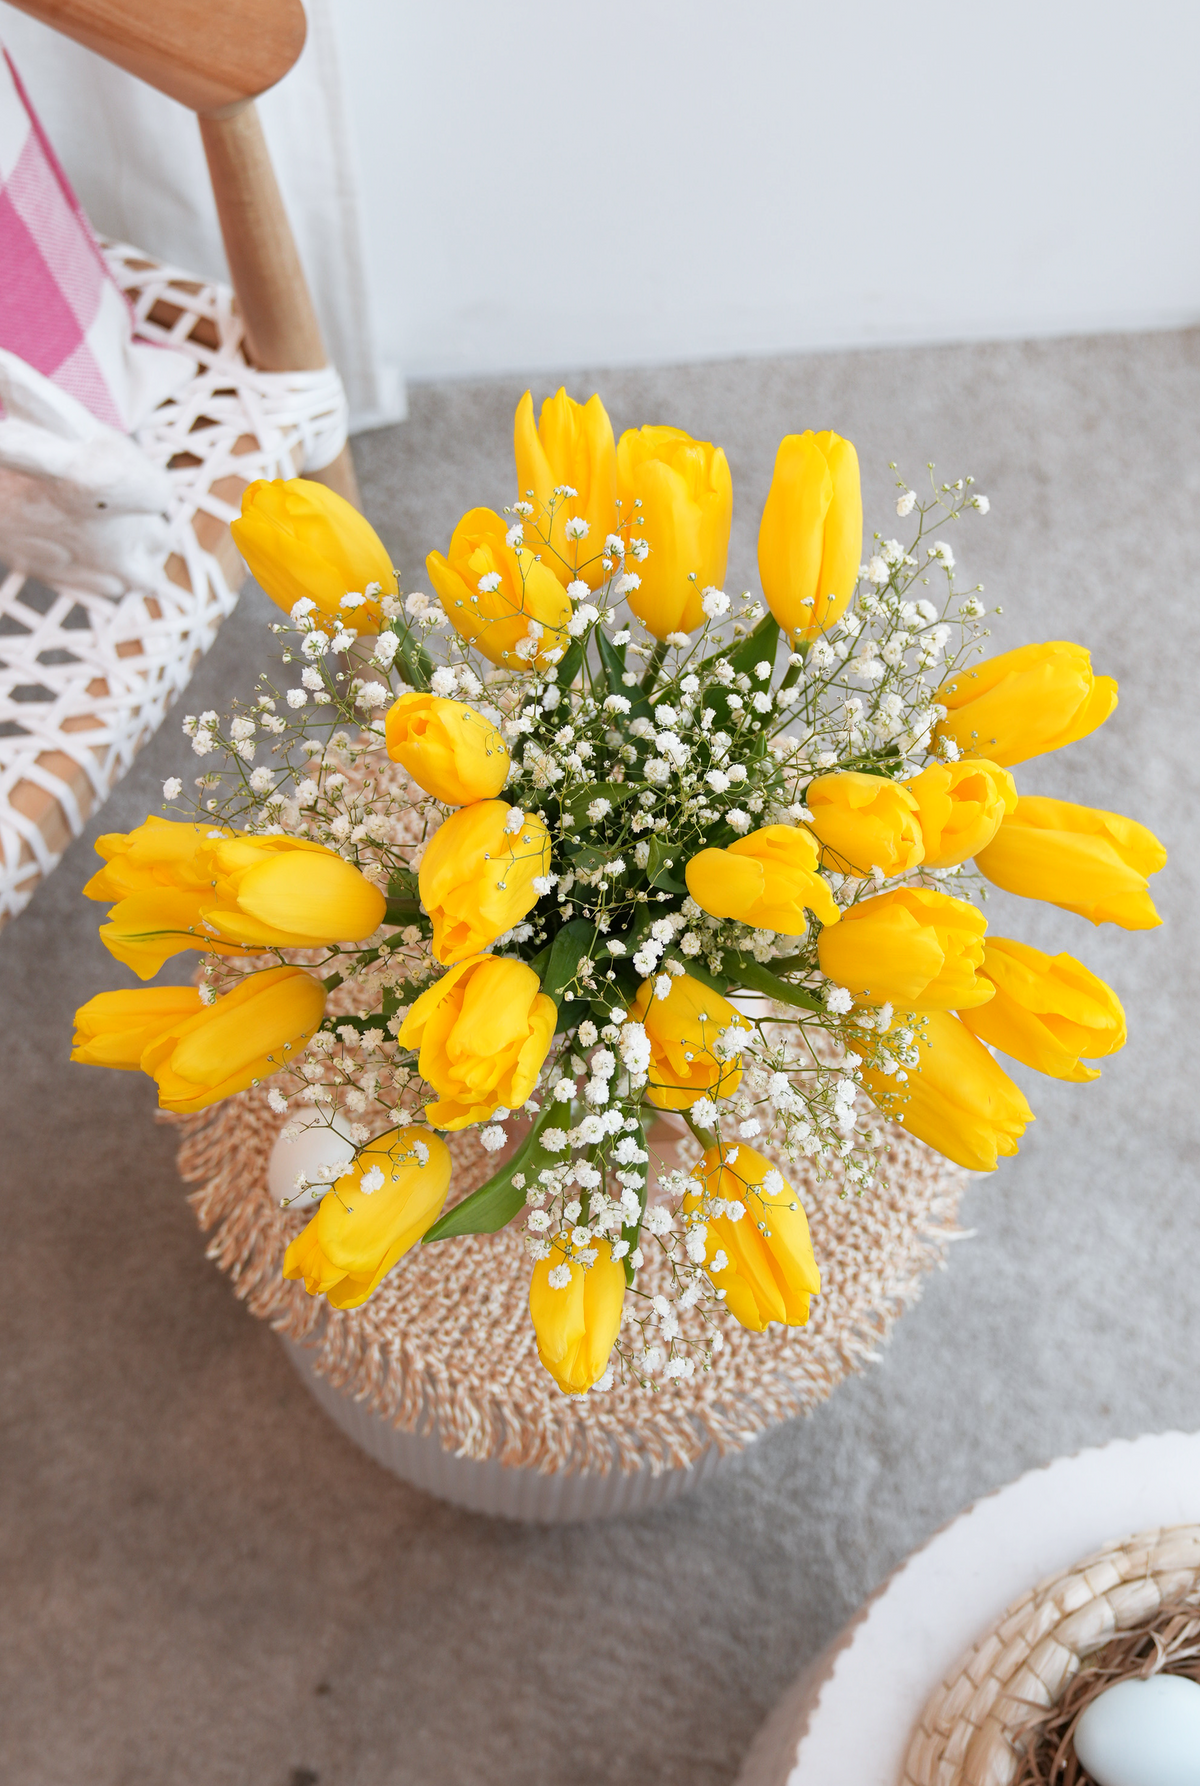 Get Well Luxury Yellow Tulips - Vase